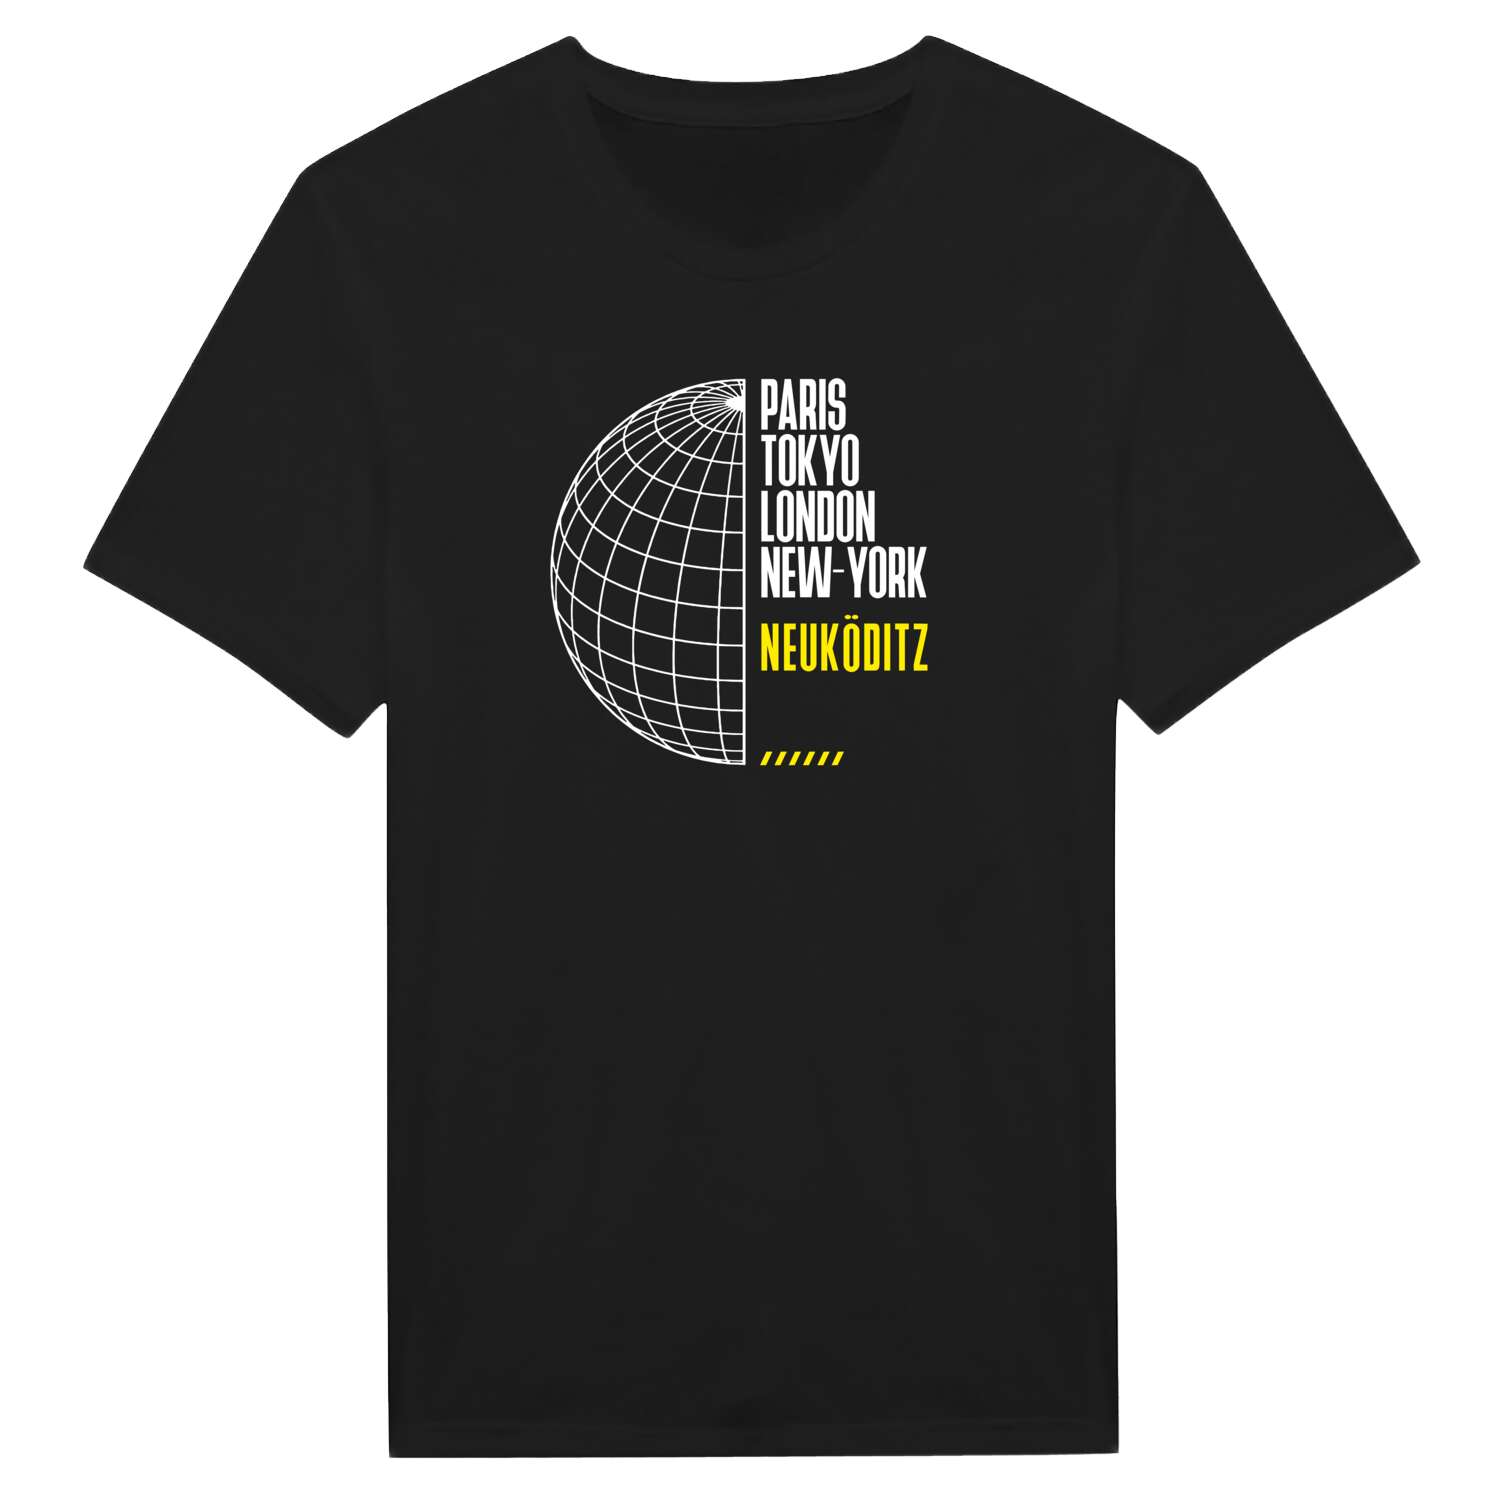 Neuköditz T-Shirt »Paris Tokyo London«